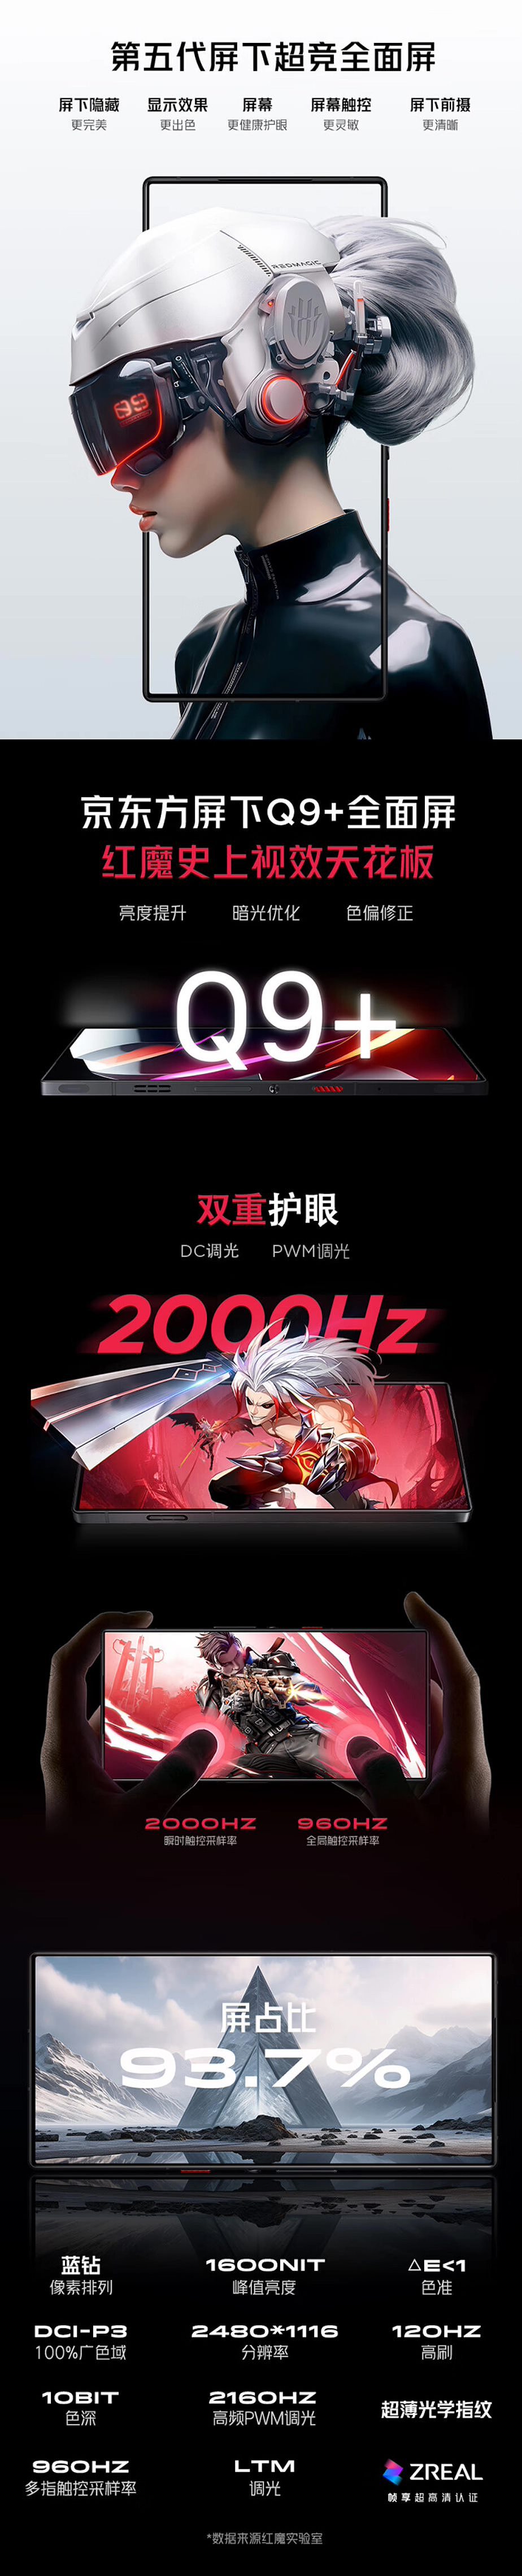 红魔 9 Pro 系列手机今日开售：背部纯平，售 4399 元起 - 3